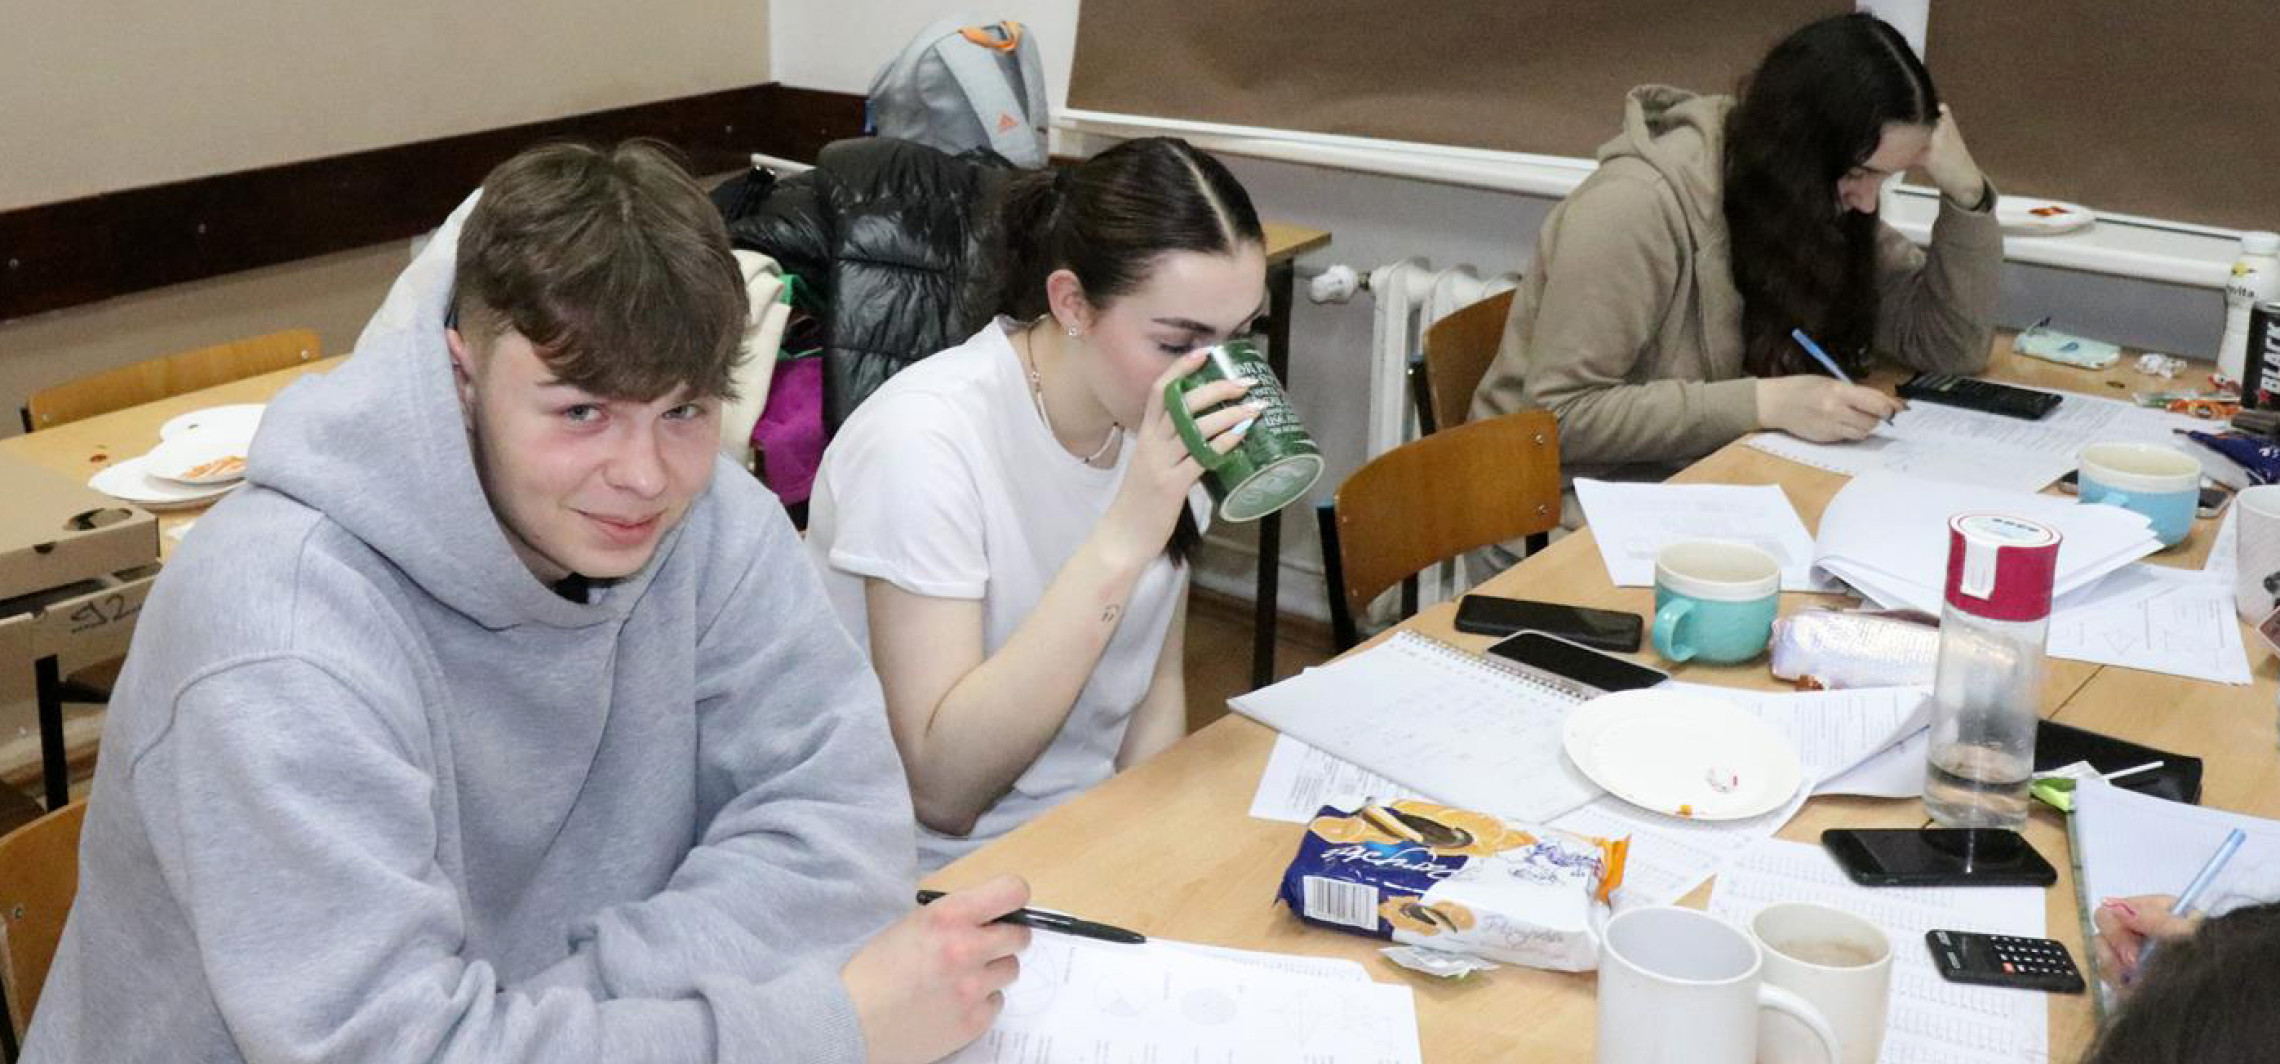 Inowrocław - Zostali w szkole na noc, żeby przygotować się do matury 